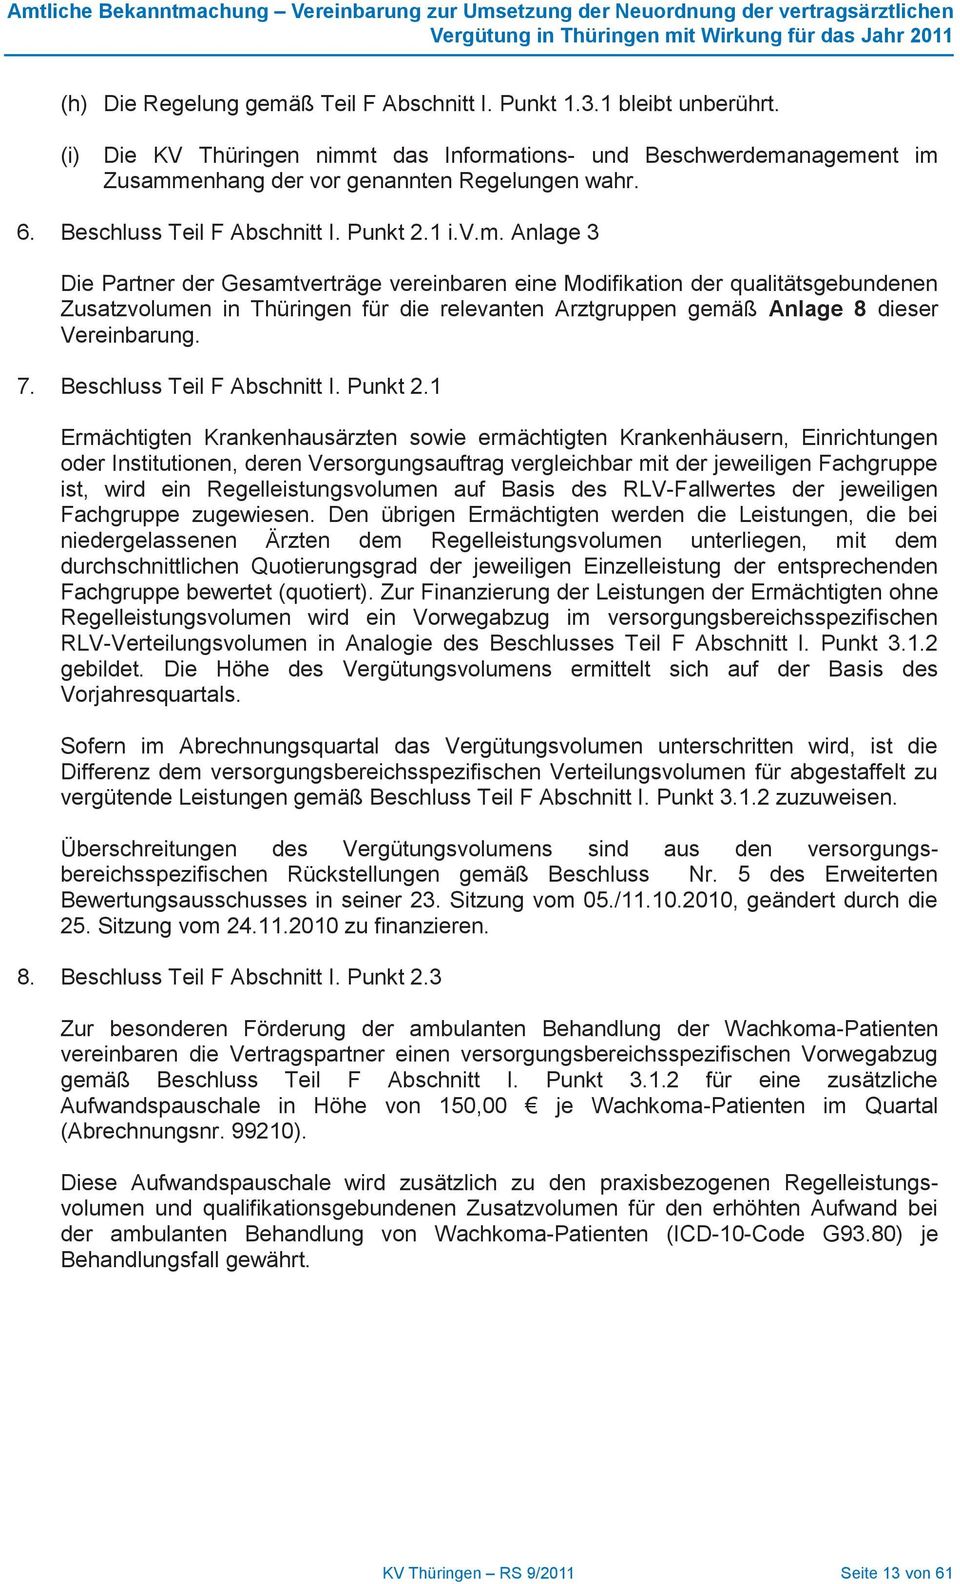 Anlage Die Partner der Gesamtverträge vereinbaren eine Modifikation der qualitätsgebundenen Zusatzvolumen in Thüringen für die relevanten Arztgruppen gemäß Anlage 8 dieser Vereinbarung.